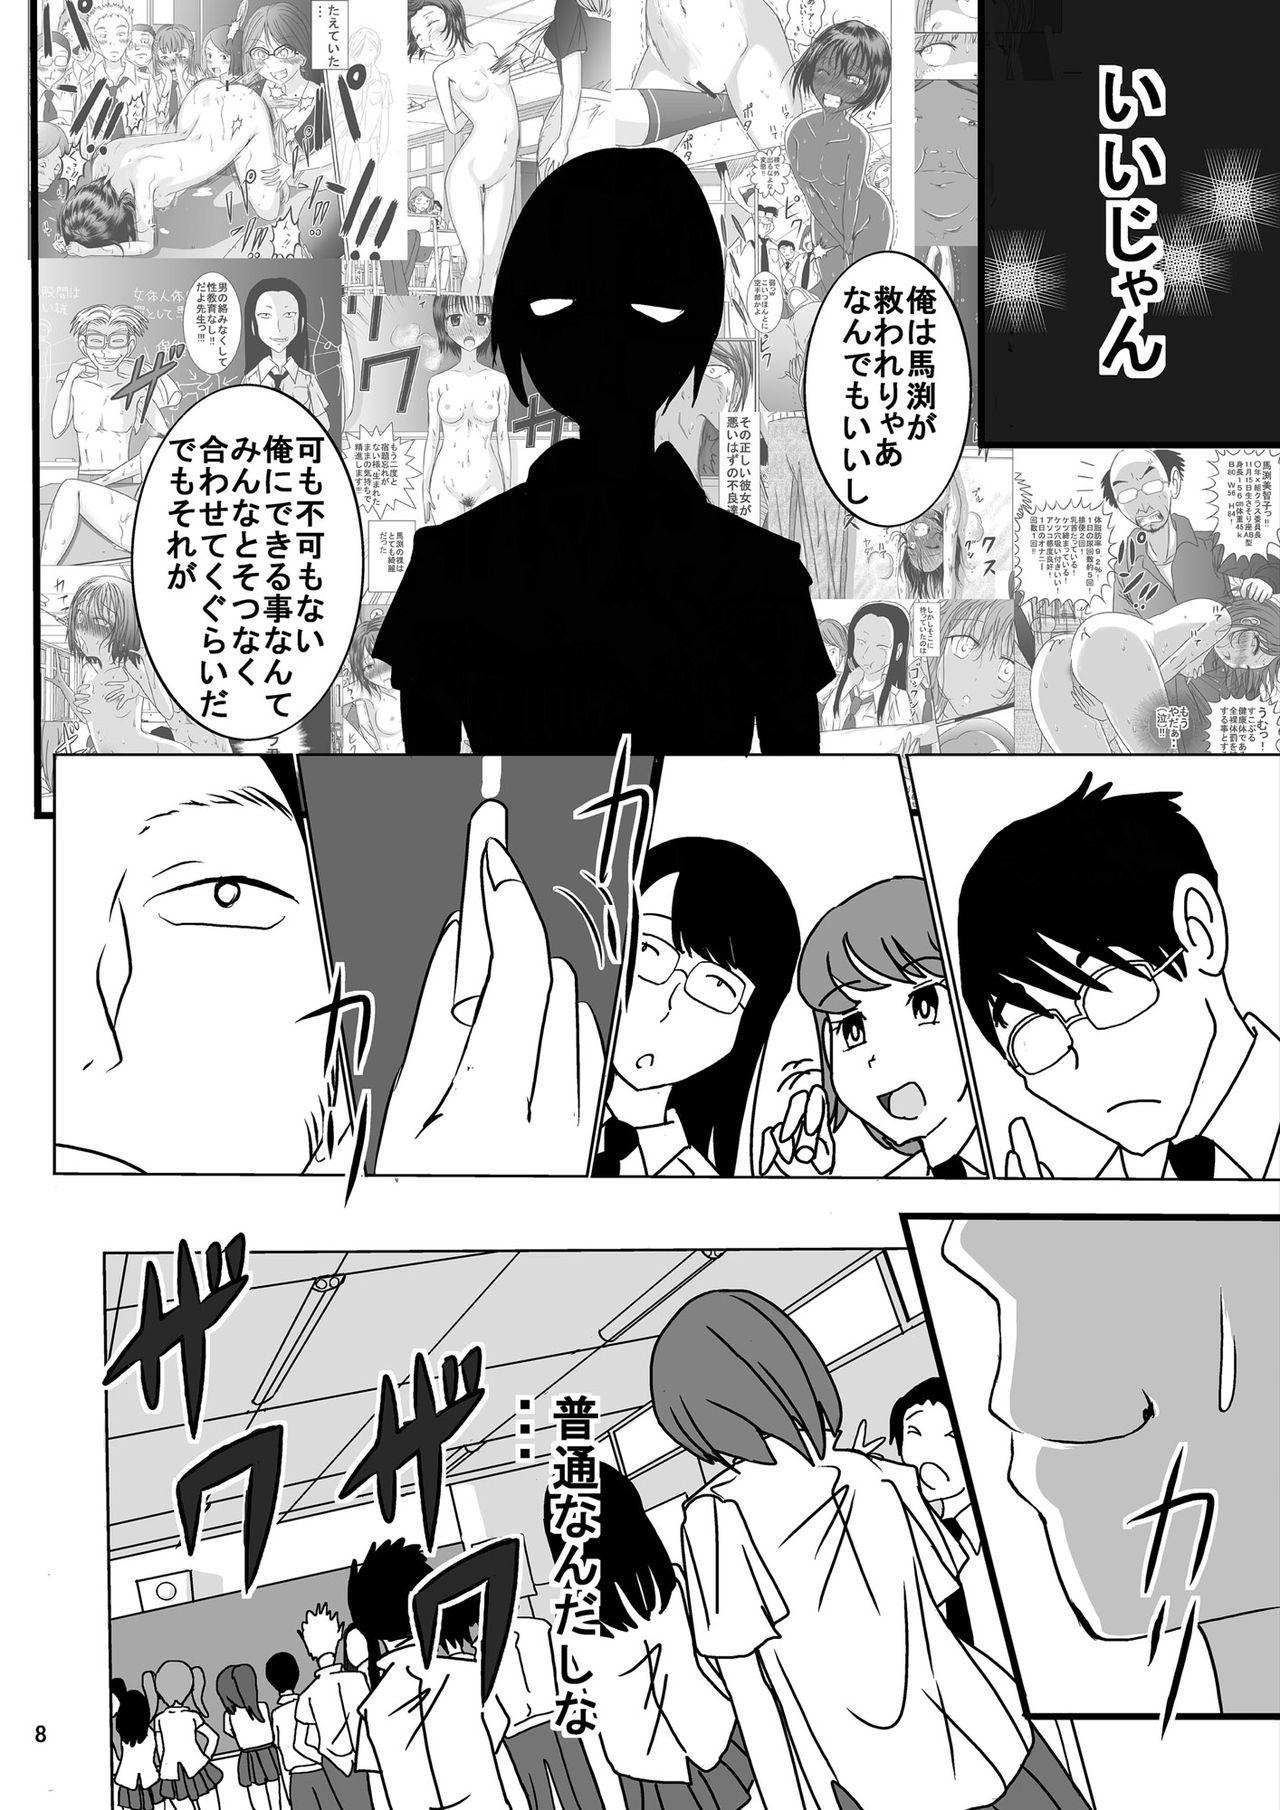 Gaygroup Shukudai Wasuremashitako-san e no Zenra Kyouiku 6 Abuse - Page 8